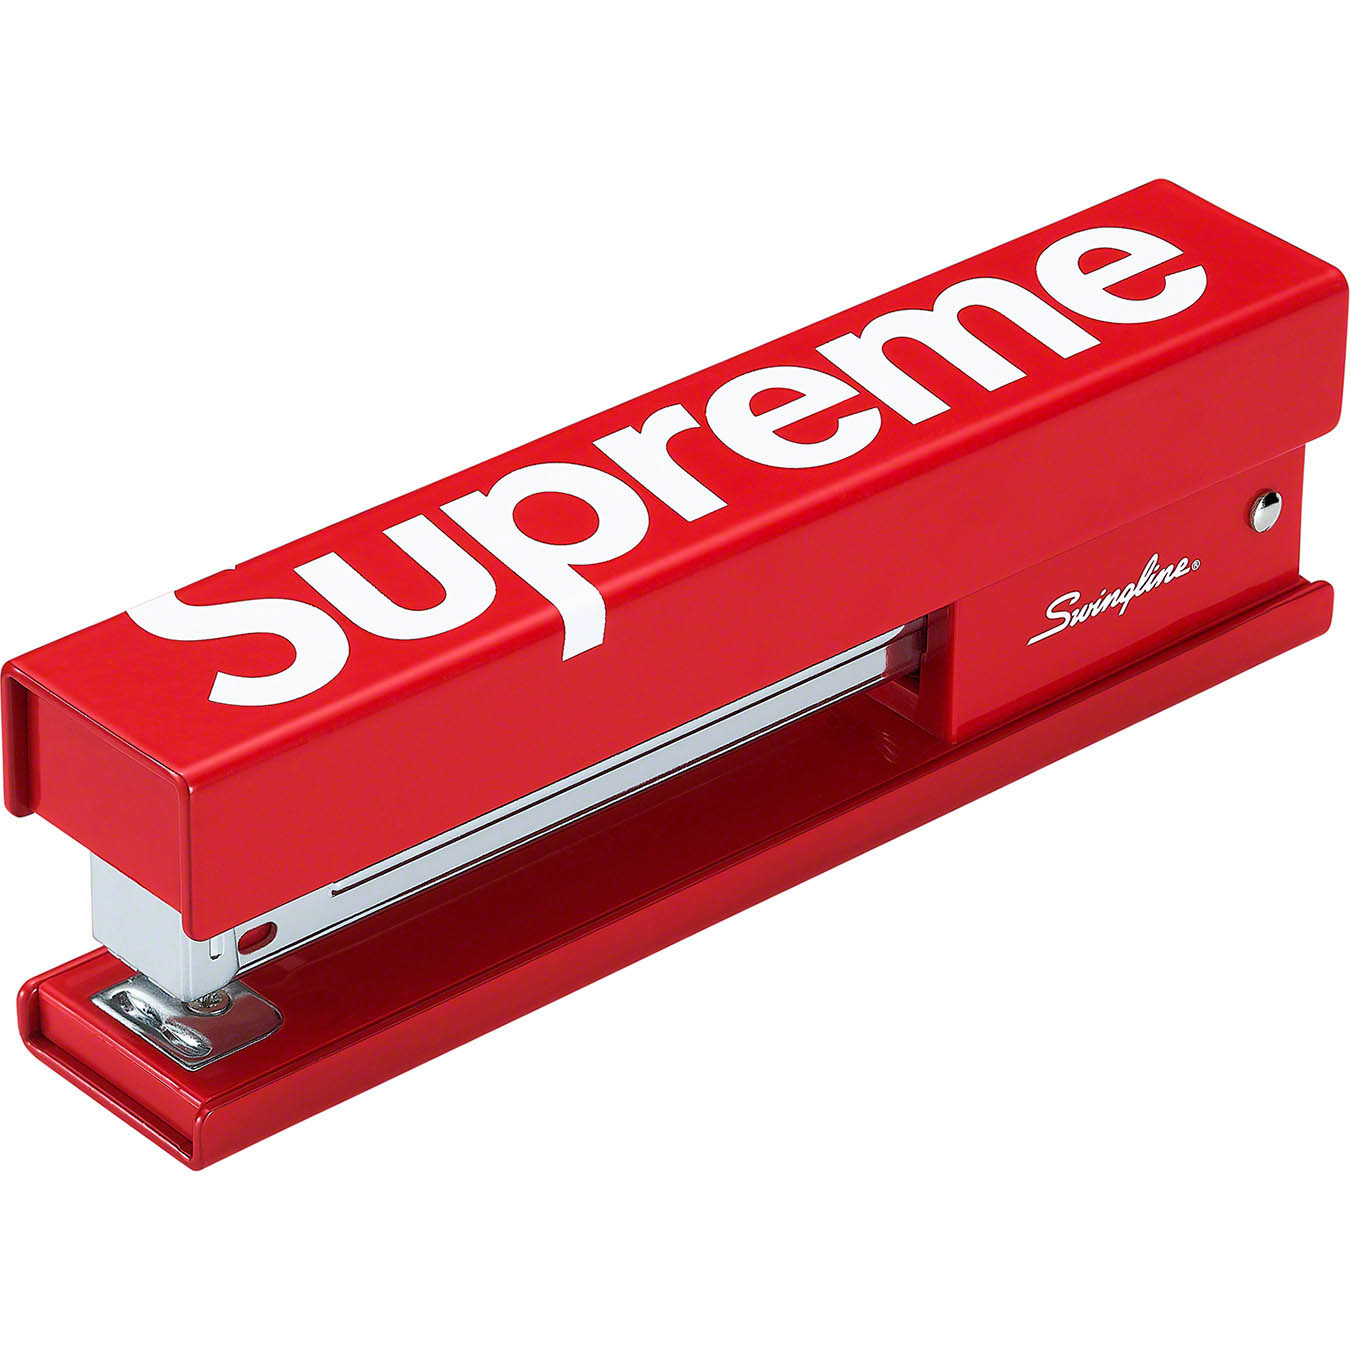 Supreme®/Swingline® Stapler